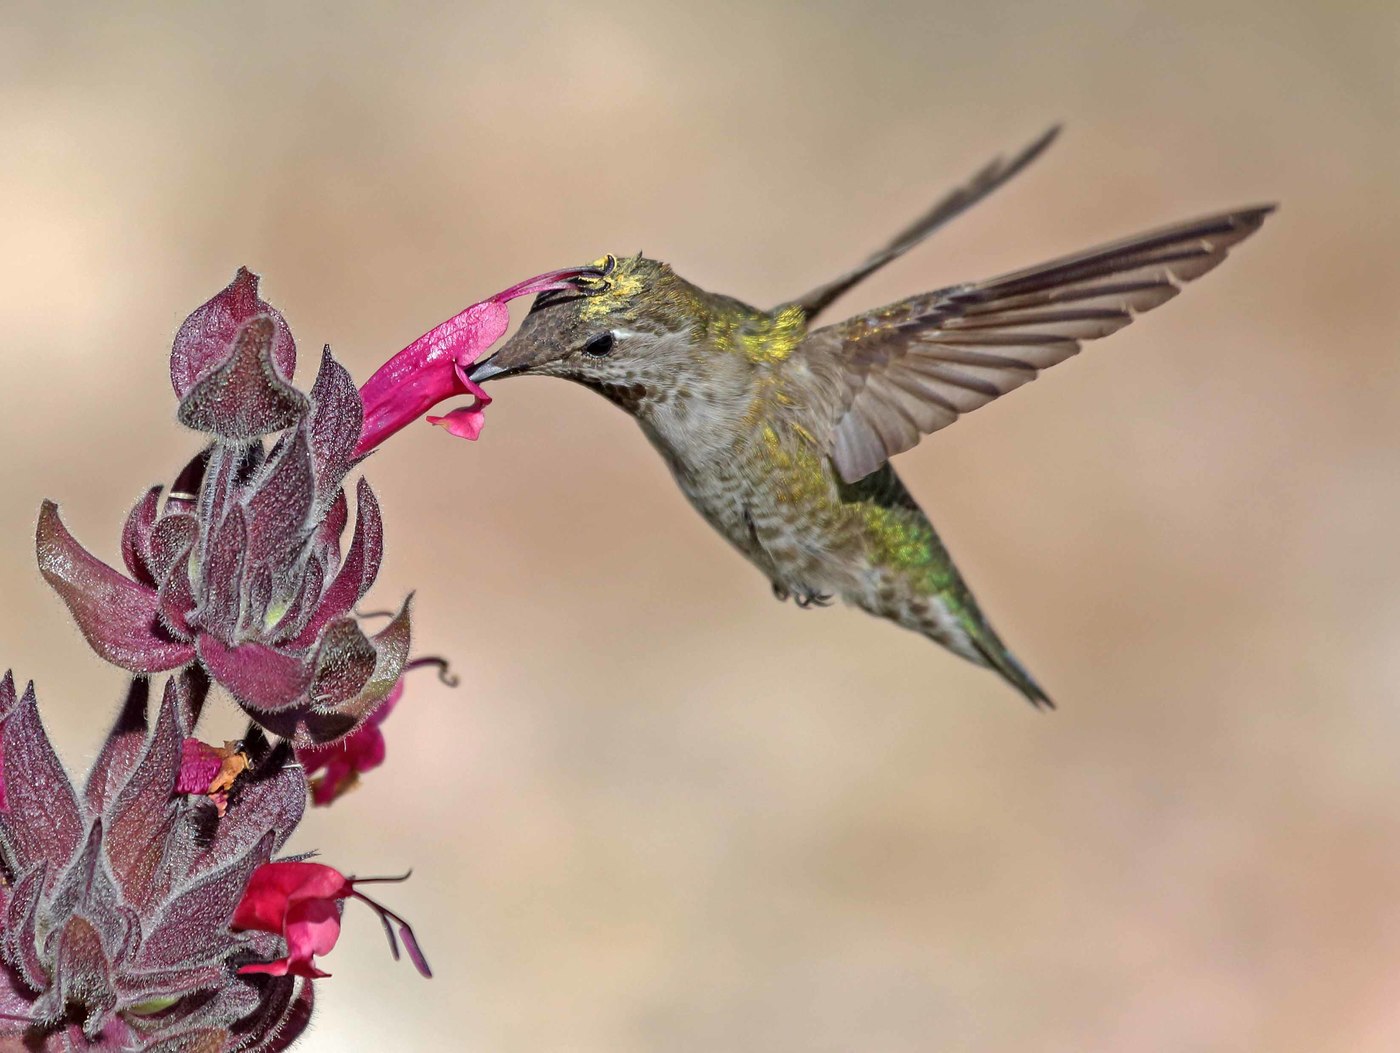 Annes Kolibri-Weibchen (Calypte Anna) trinkender Nektar von einer Blume